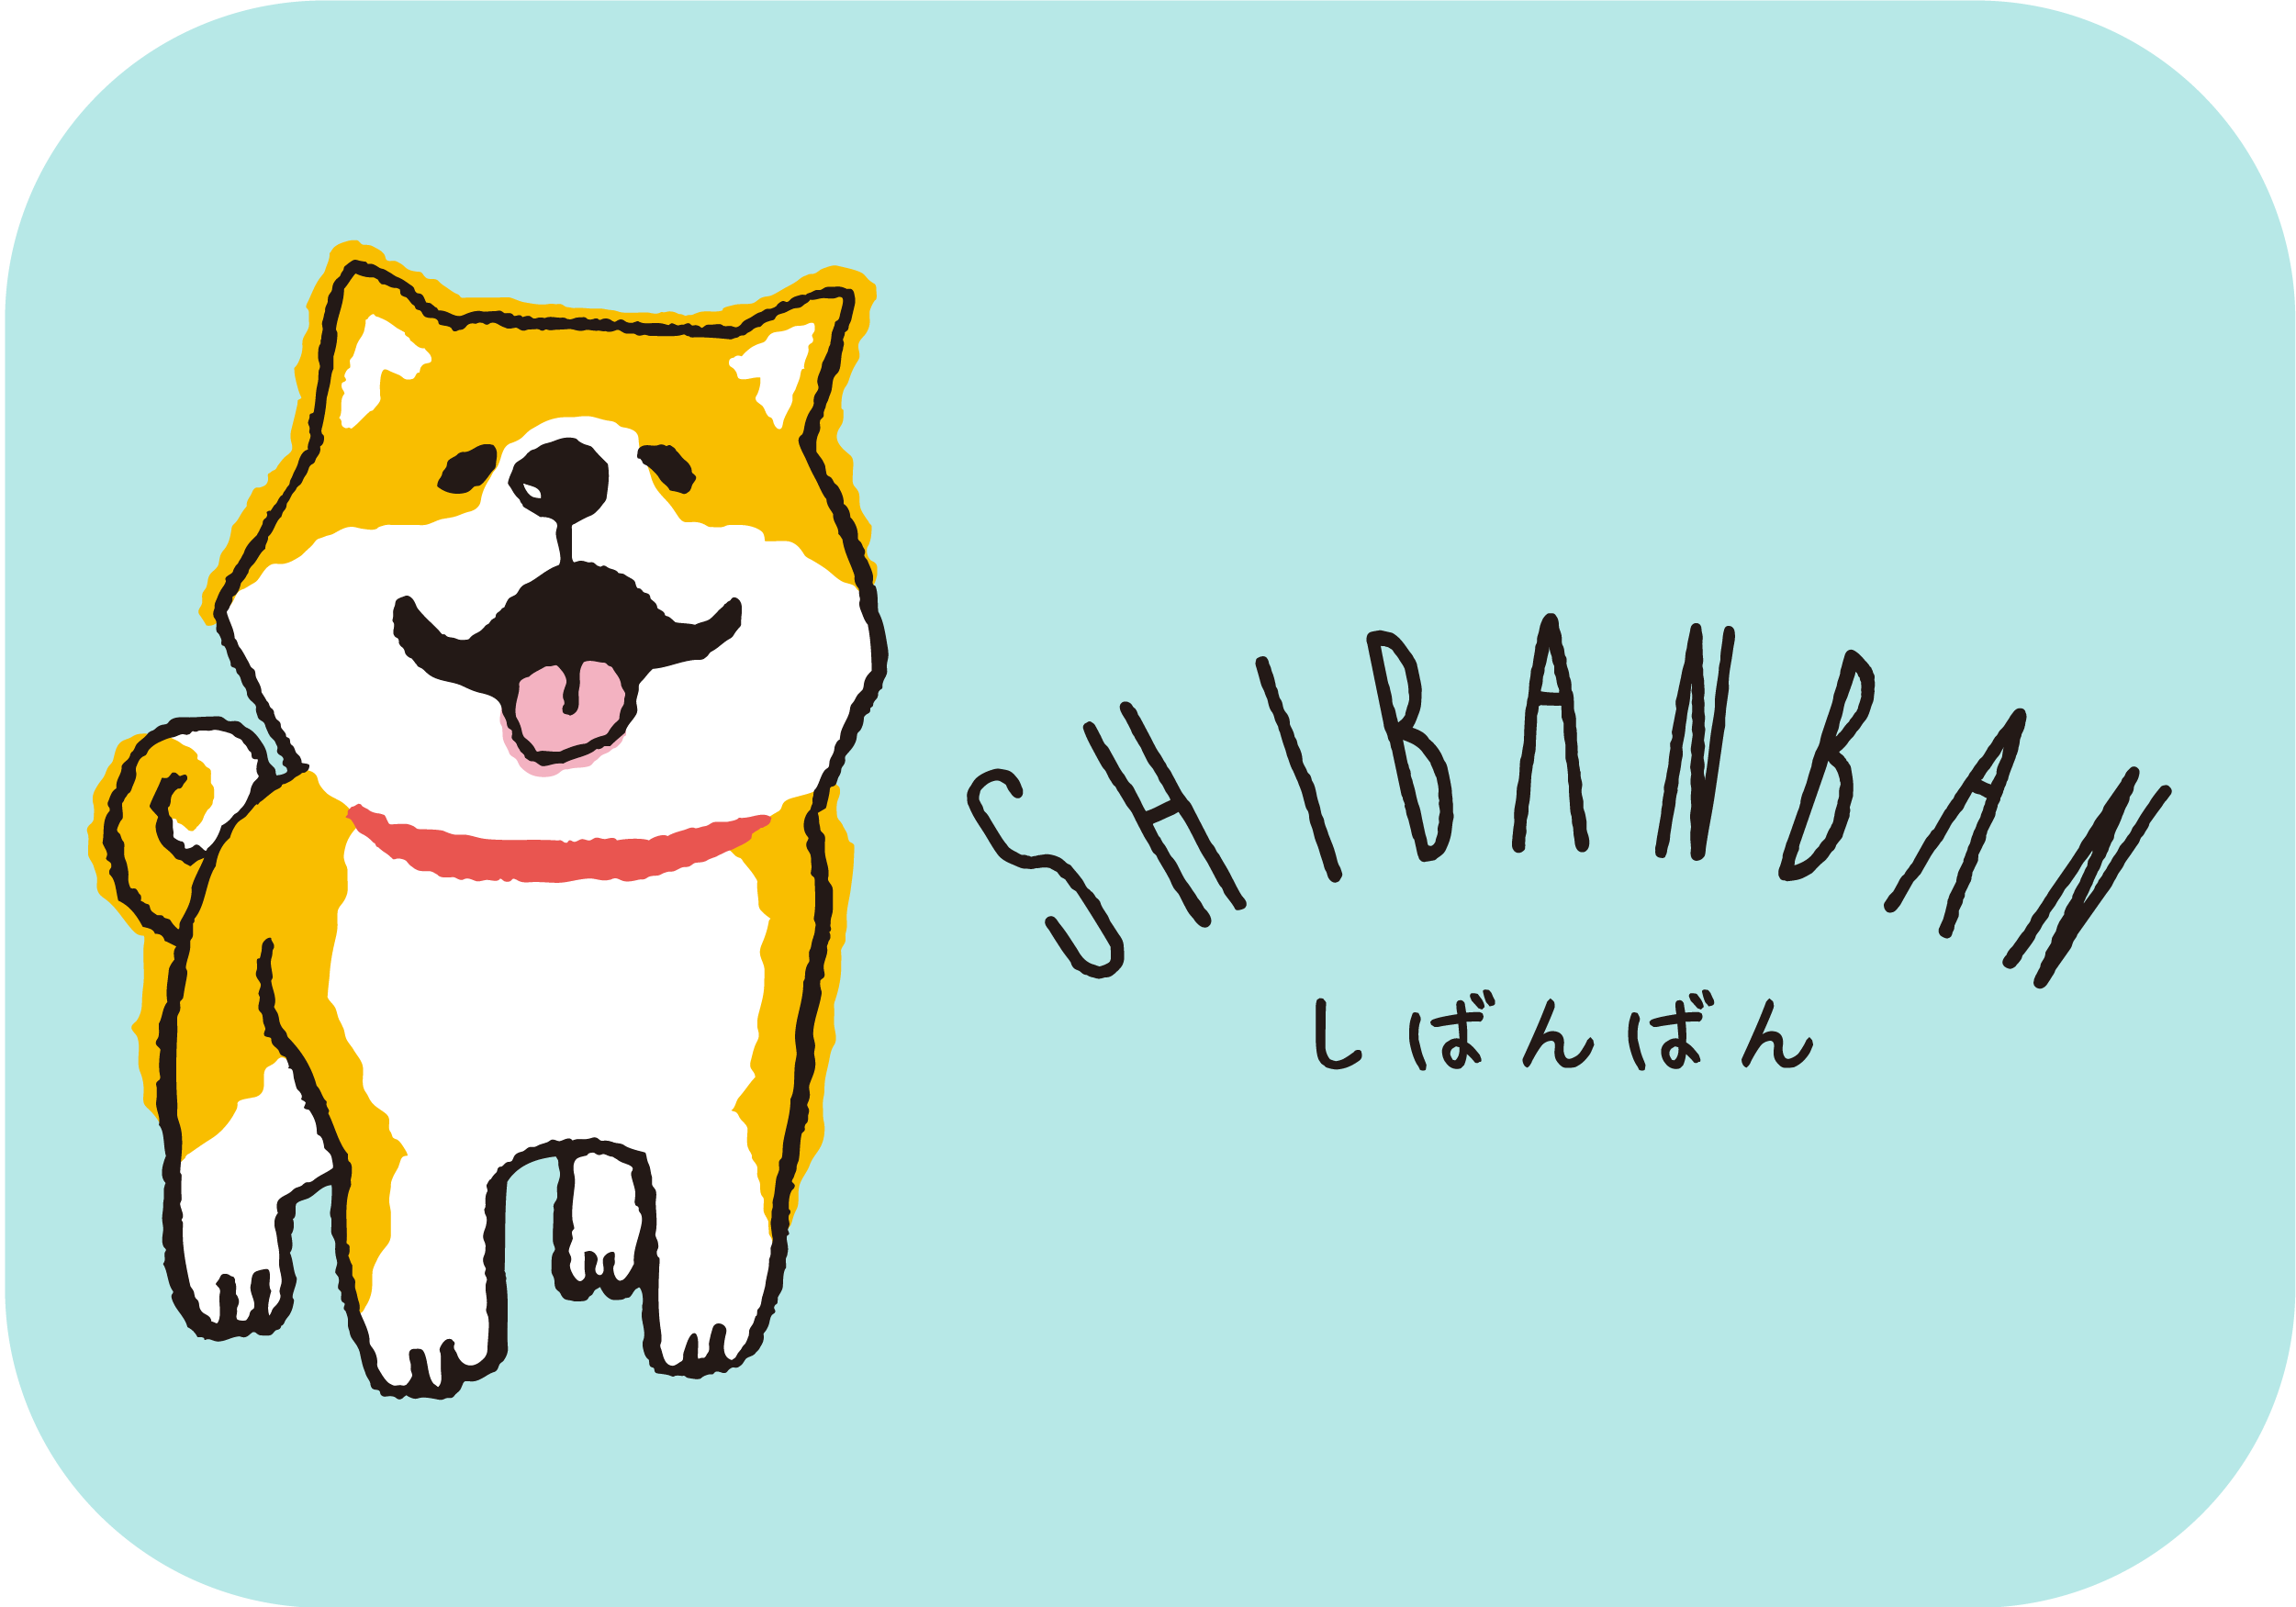 About Shibanban  